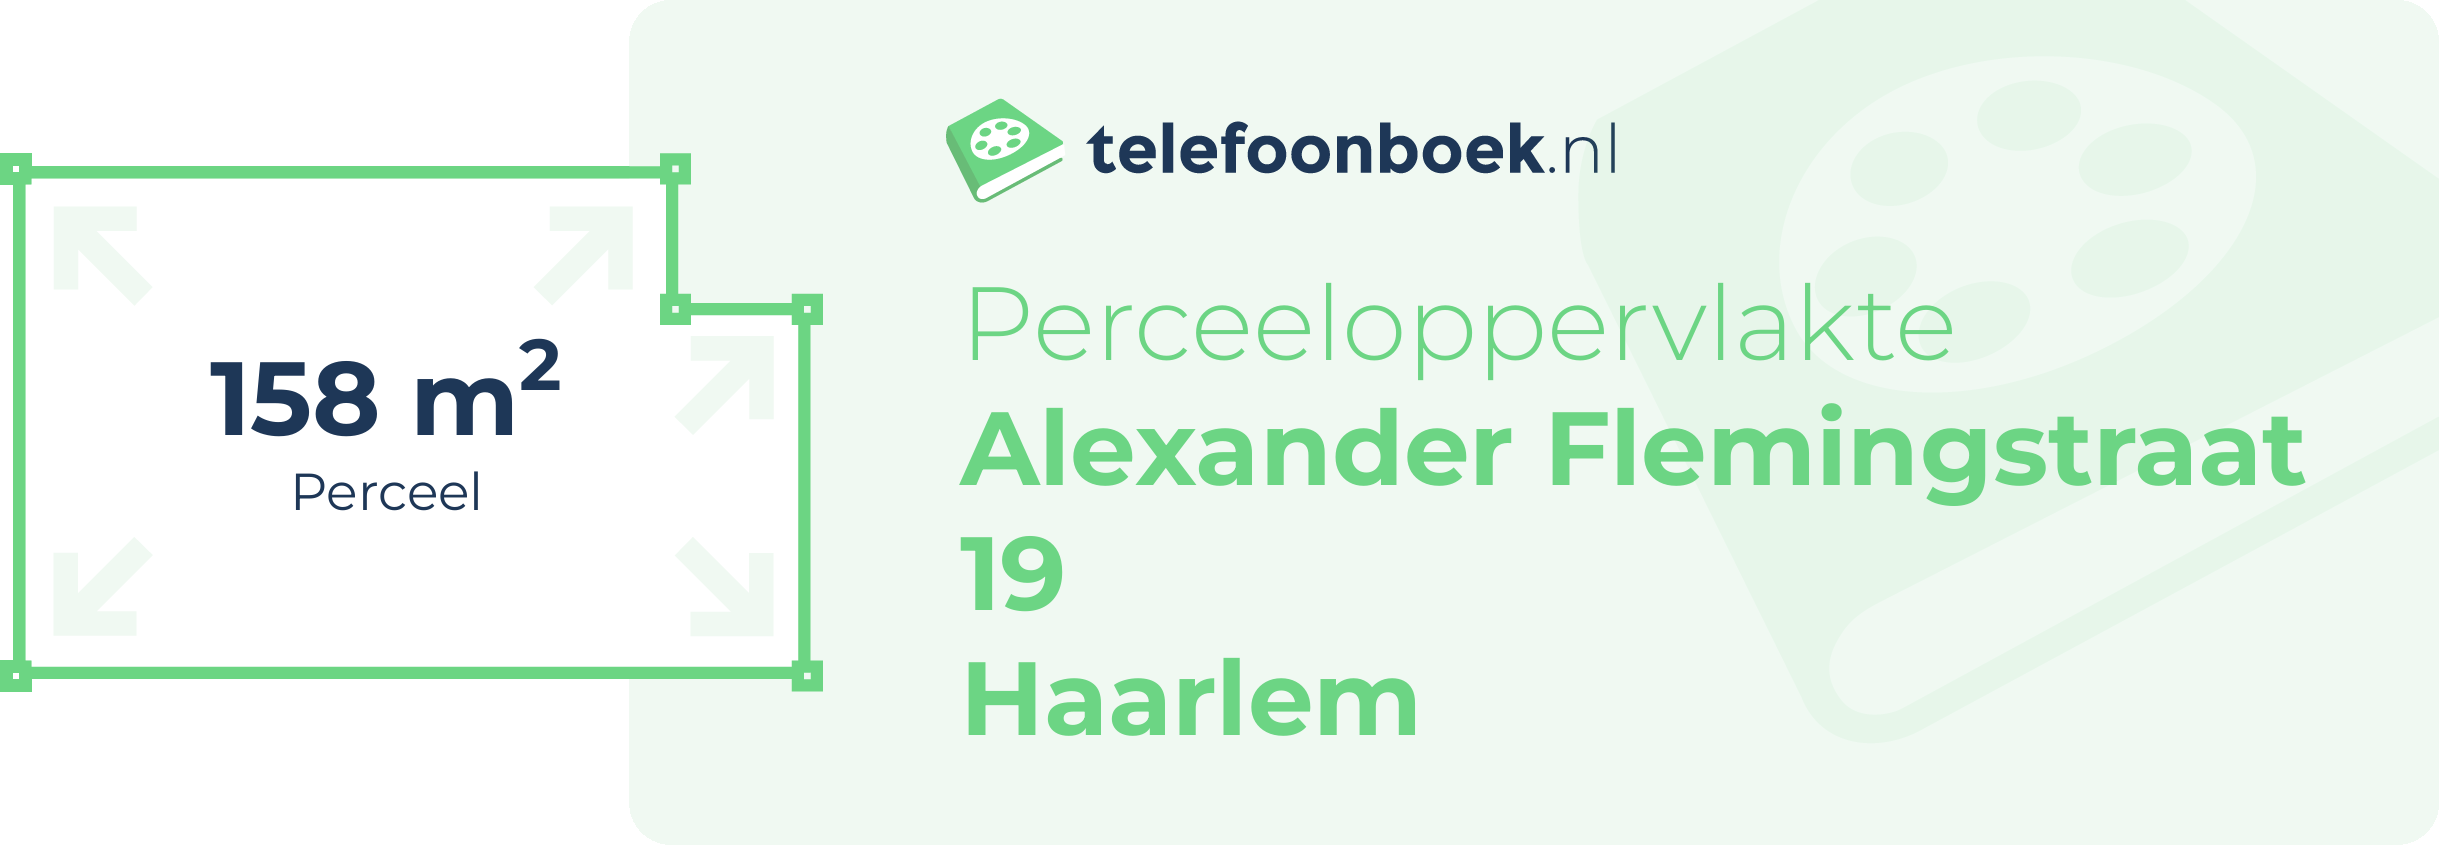 Perceeloppervlakte Alexander Flemingstraat 19 Haarlem